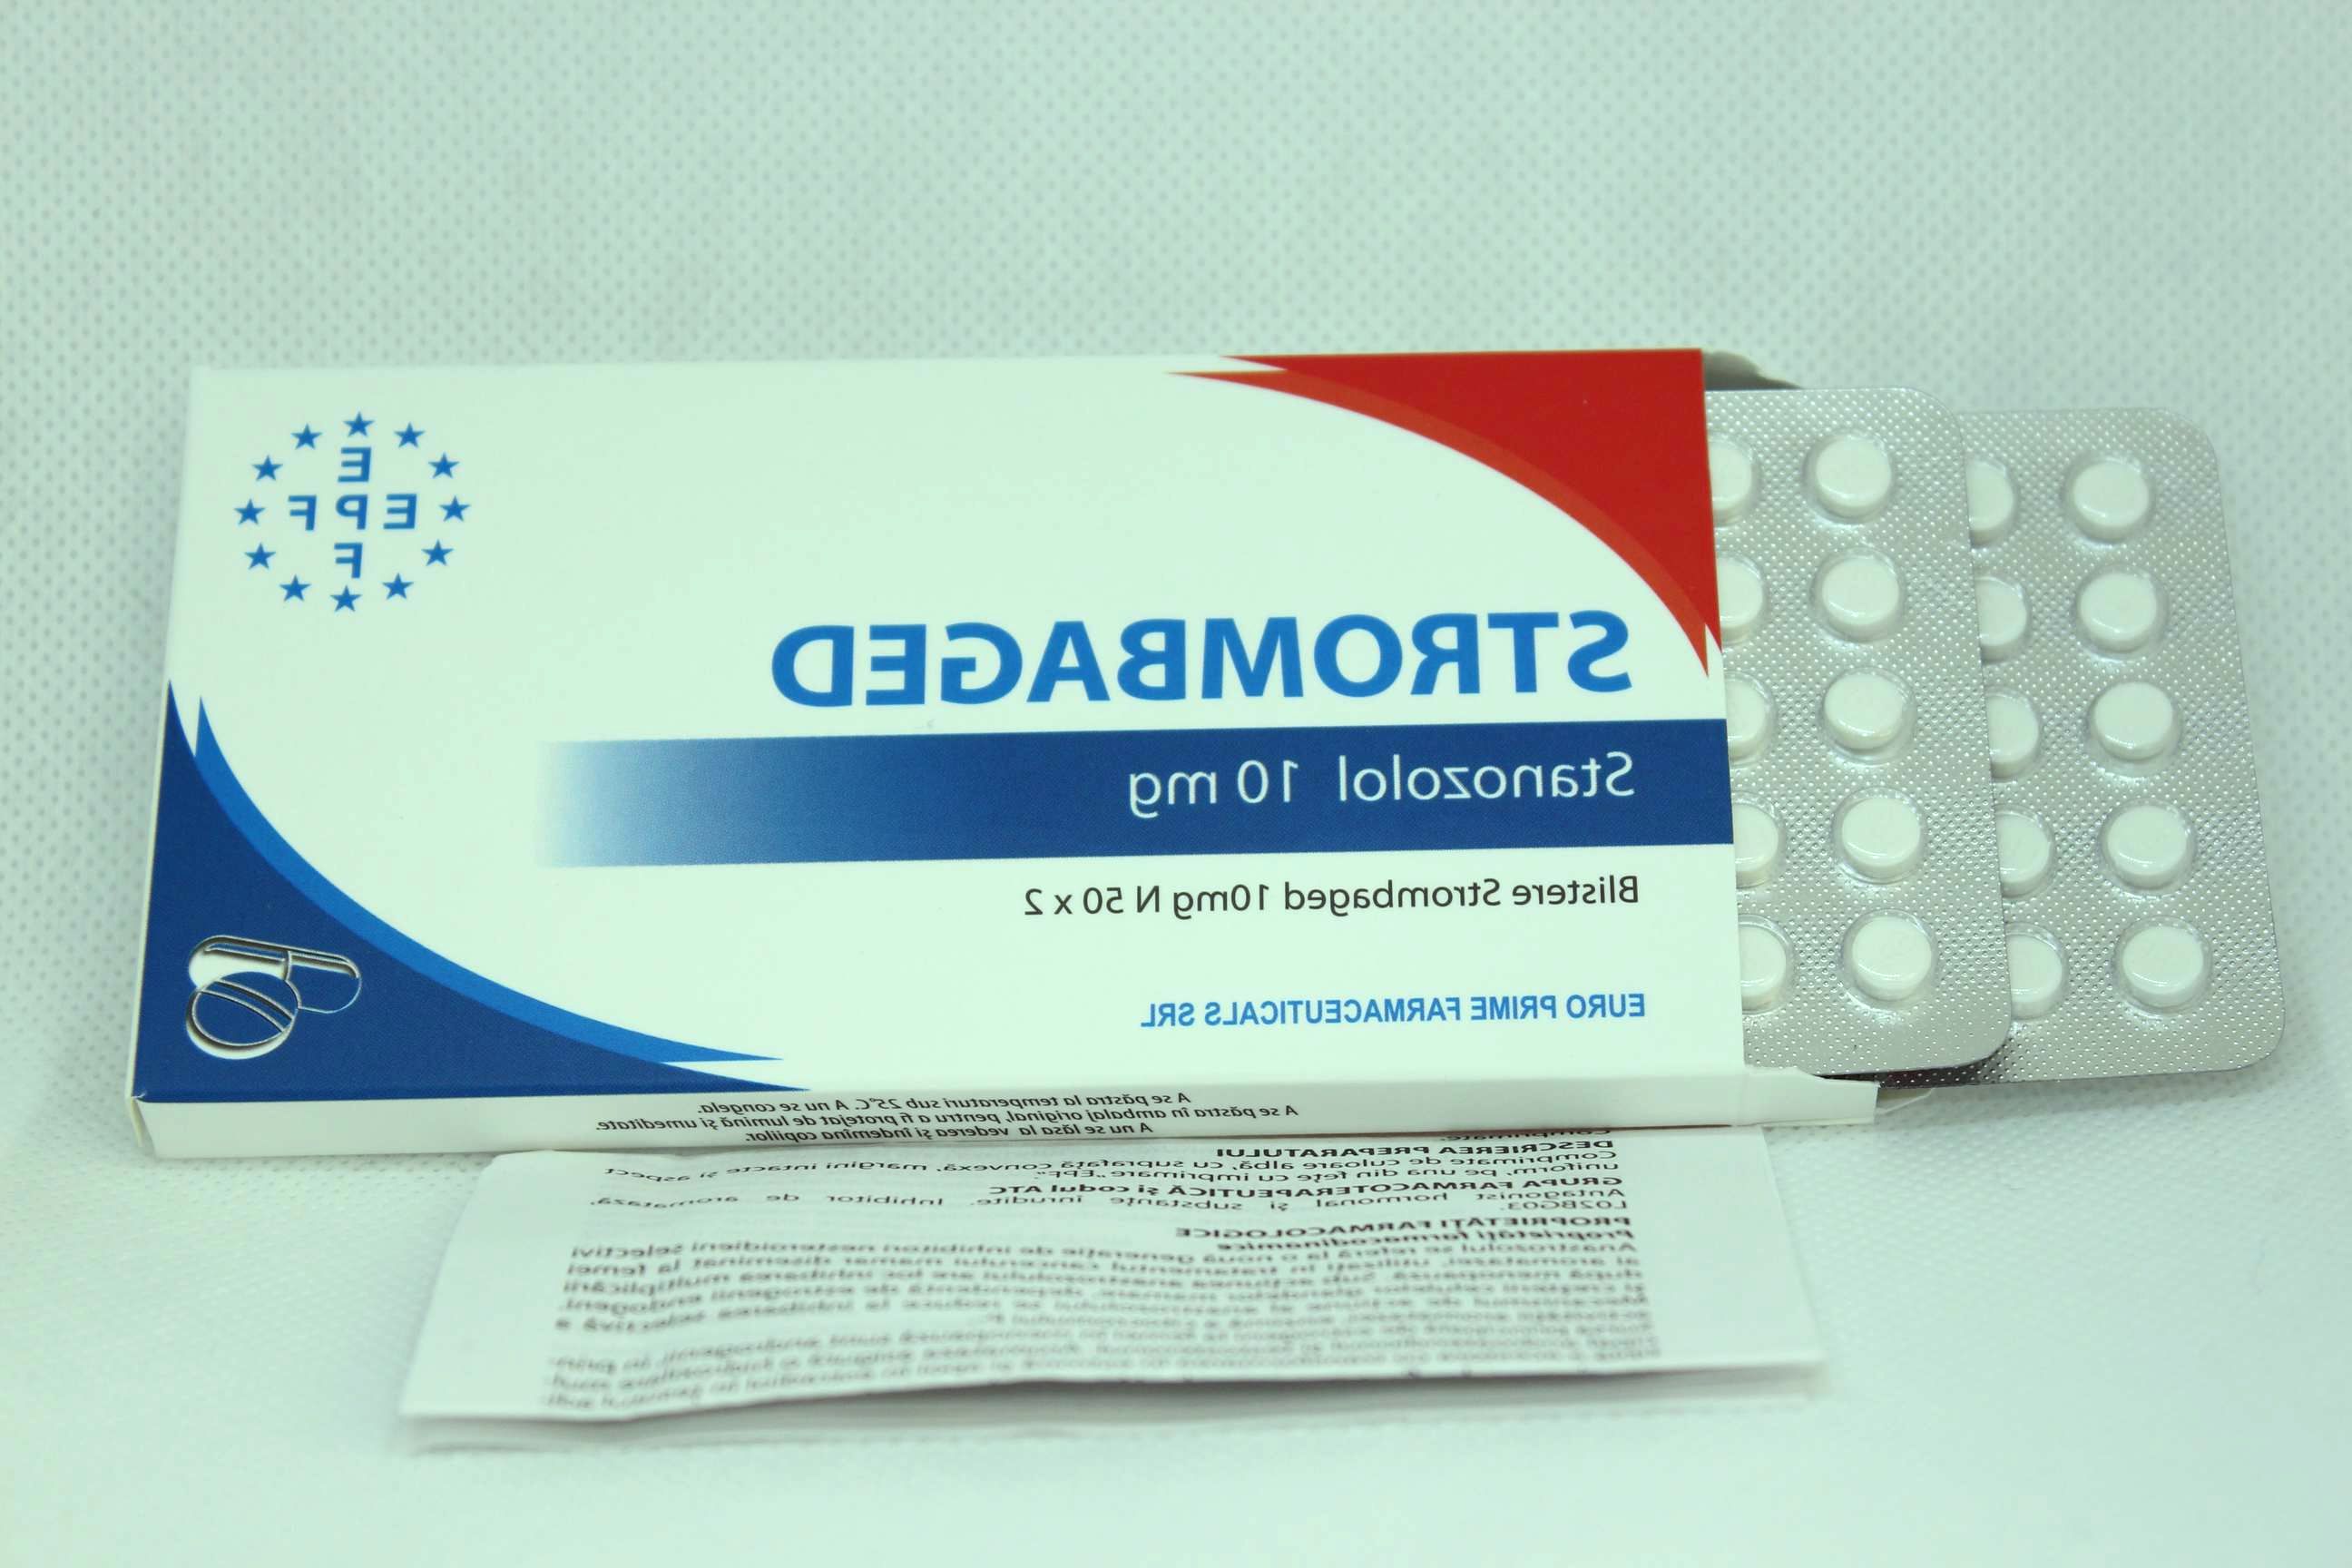 Stanozolol tabs EPF Euro Prime Farmaceuticals SRL 10mg/100tab